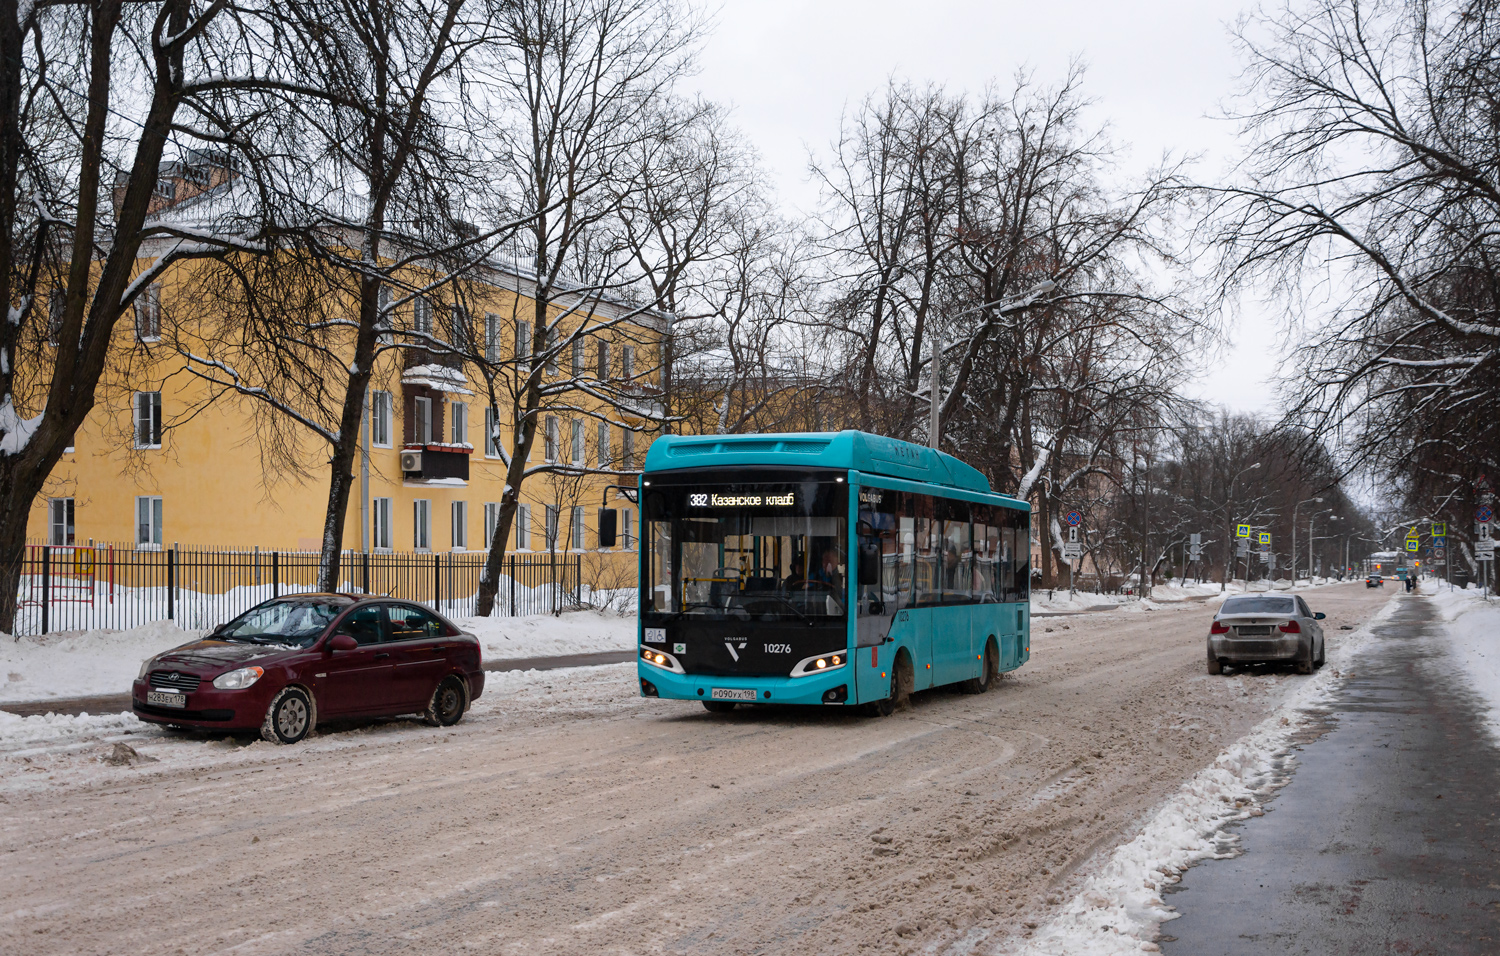 Sankt Petersburg, Volgabus-4298.G4 (CNG) # 10276